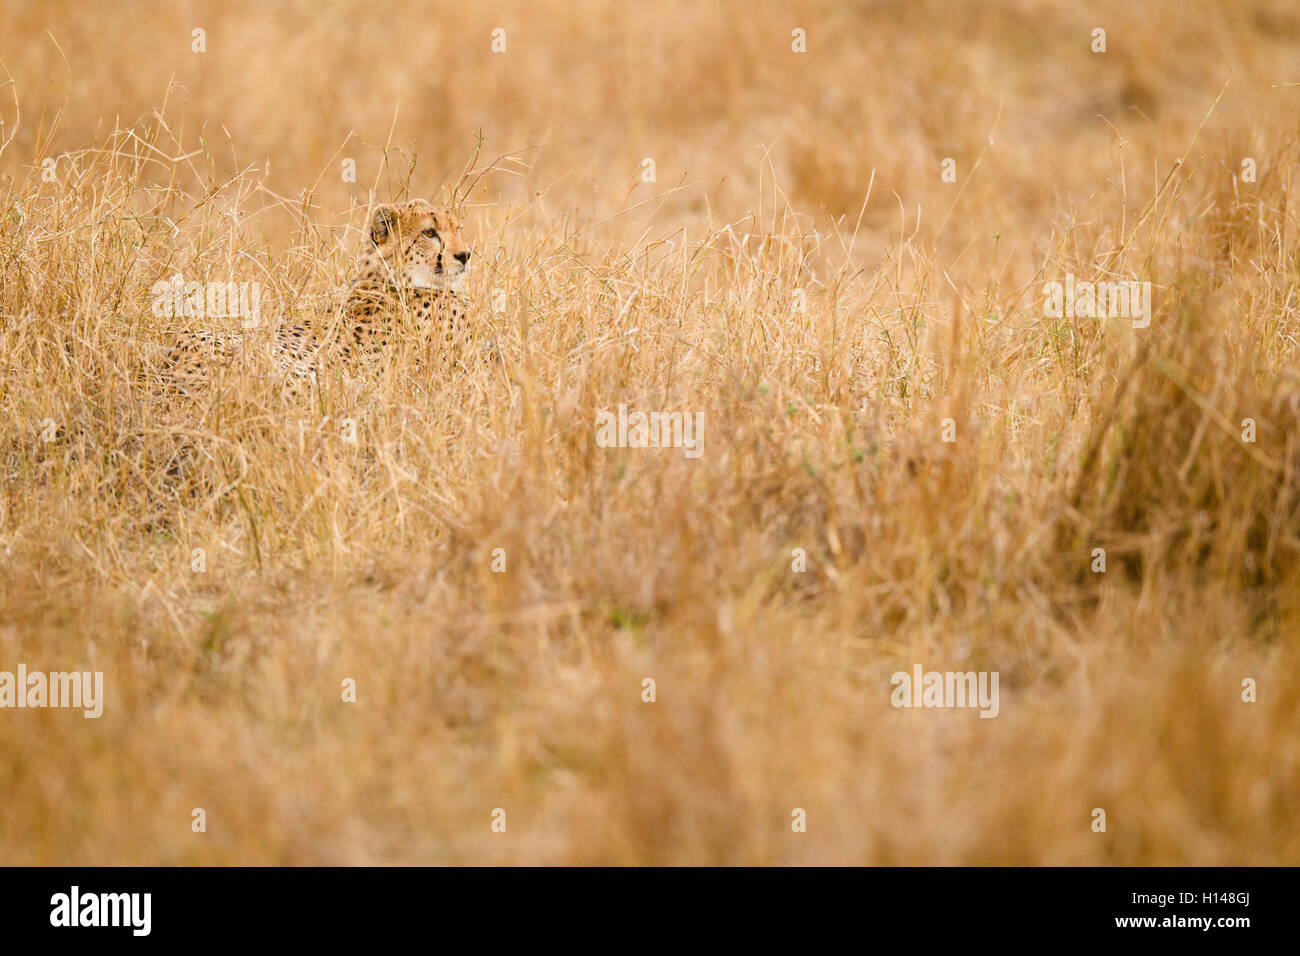 A cheetah hidden amidst grass Stock Photo